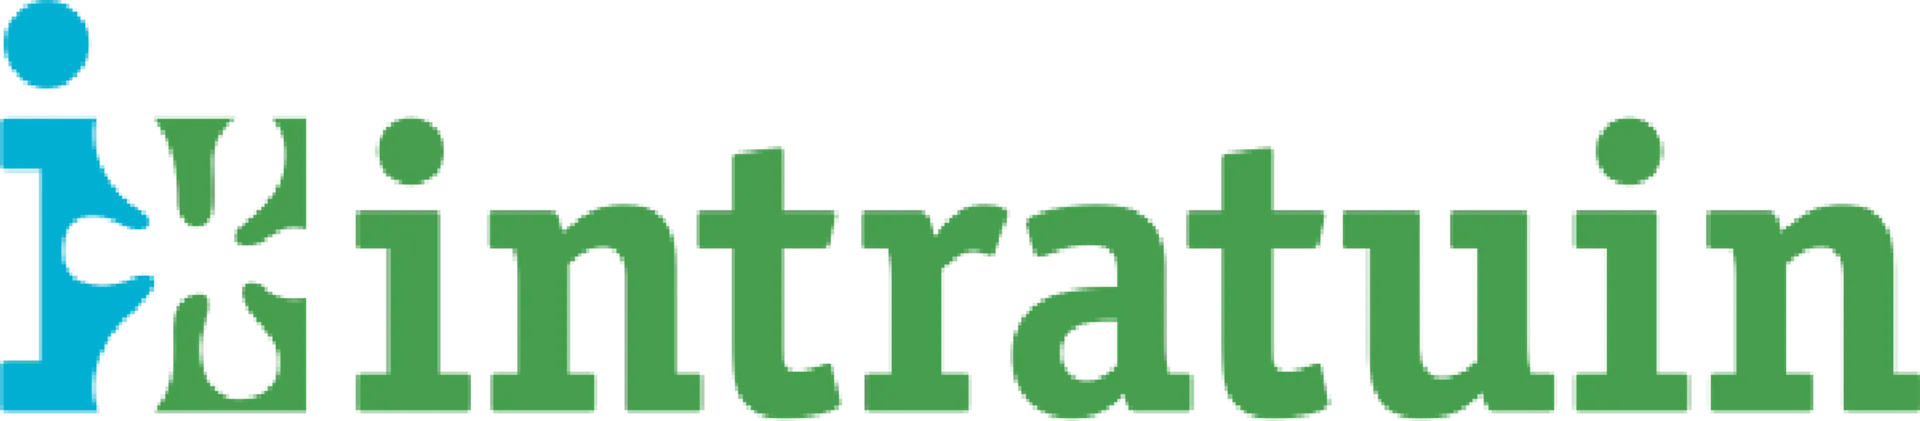 INTRATUIN logo